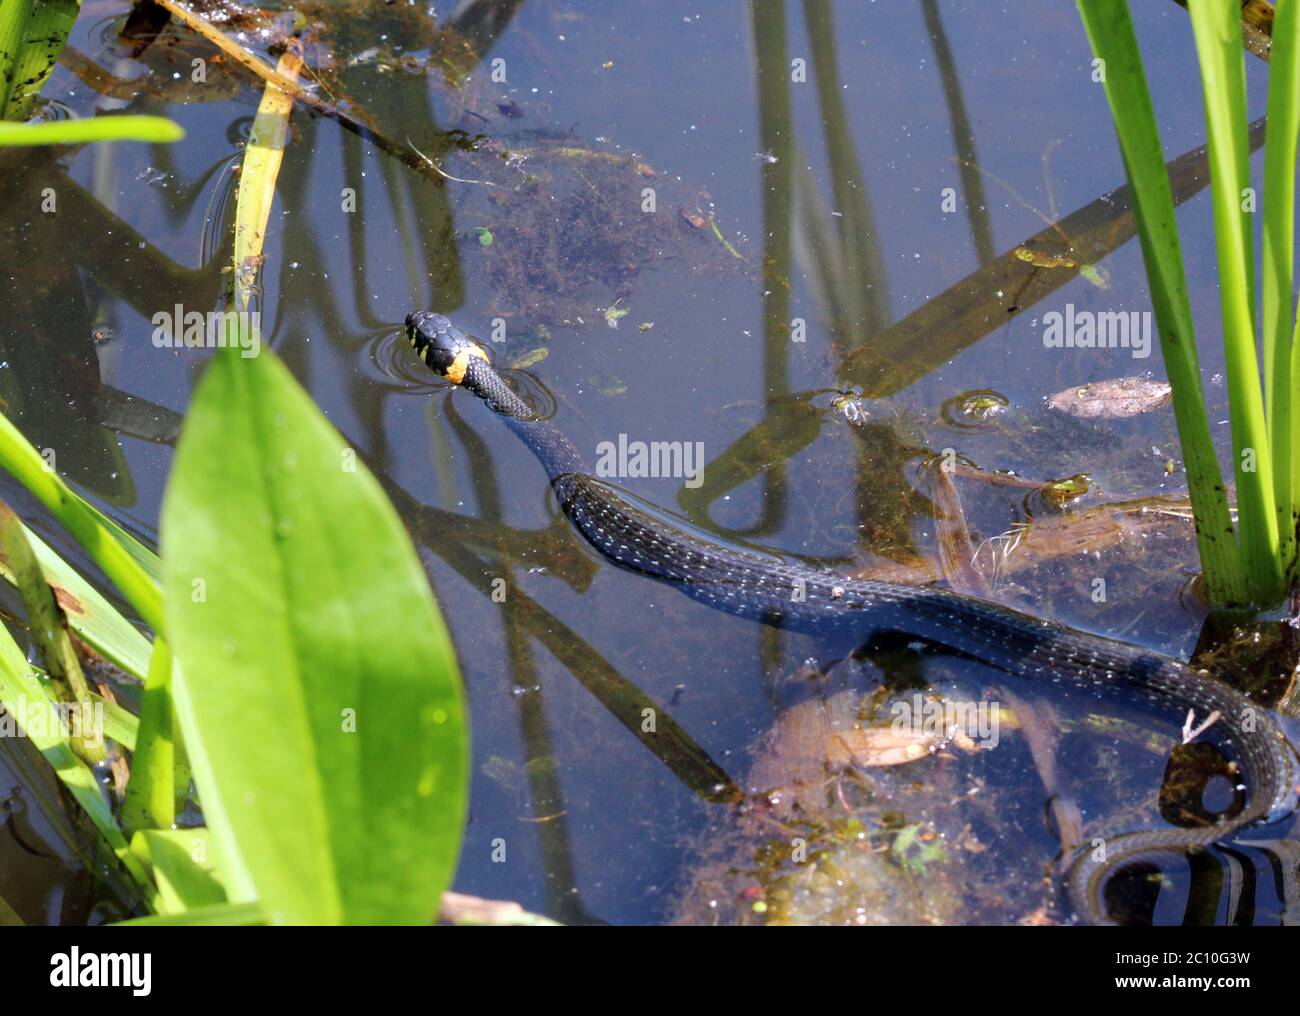 Natrix de serpiente negra Natriks está flotando sobre el agua Foto de stock